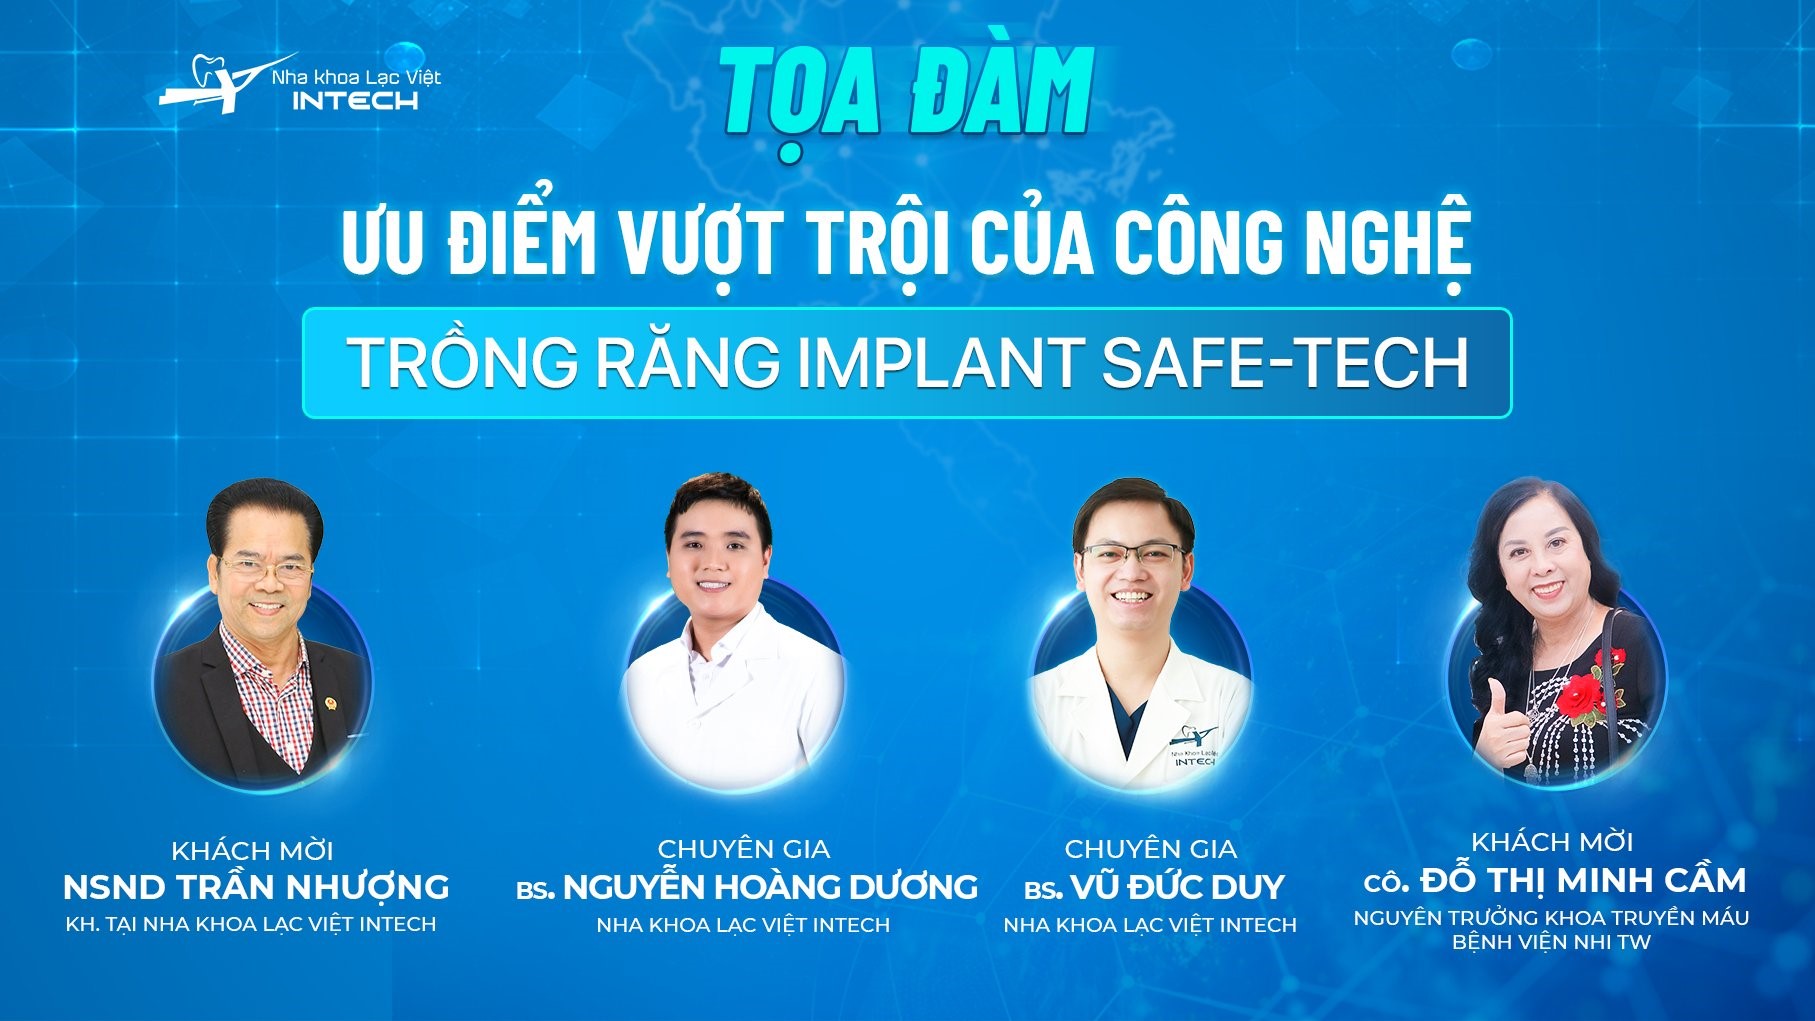 Tọa đàm “Ưu điểm của công nghệ trồng răng implant Safe-tech” - bước tiến mới trong ngành nha khoa thế giới - 1